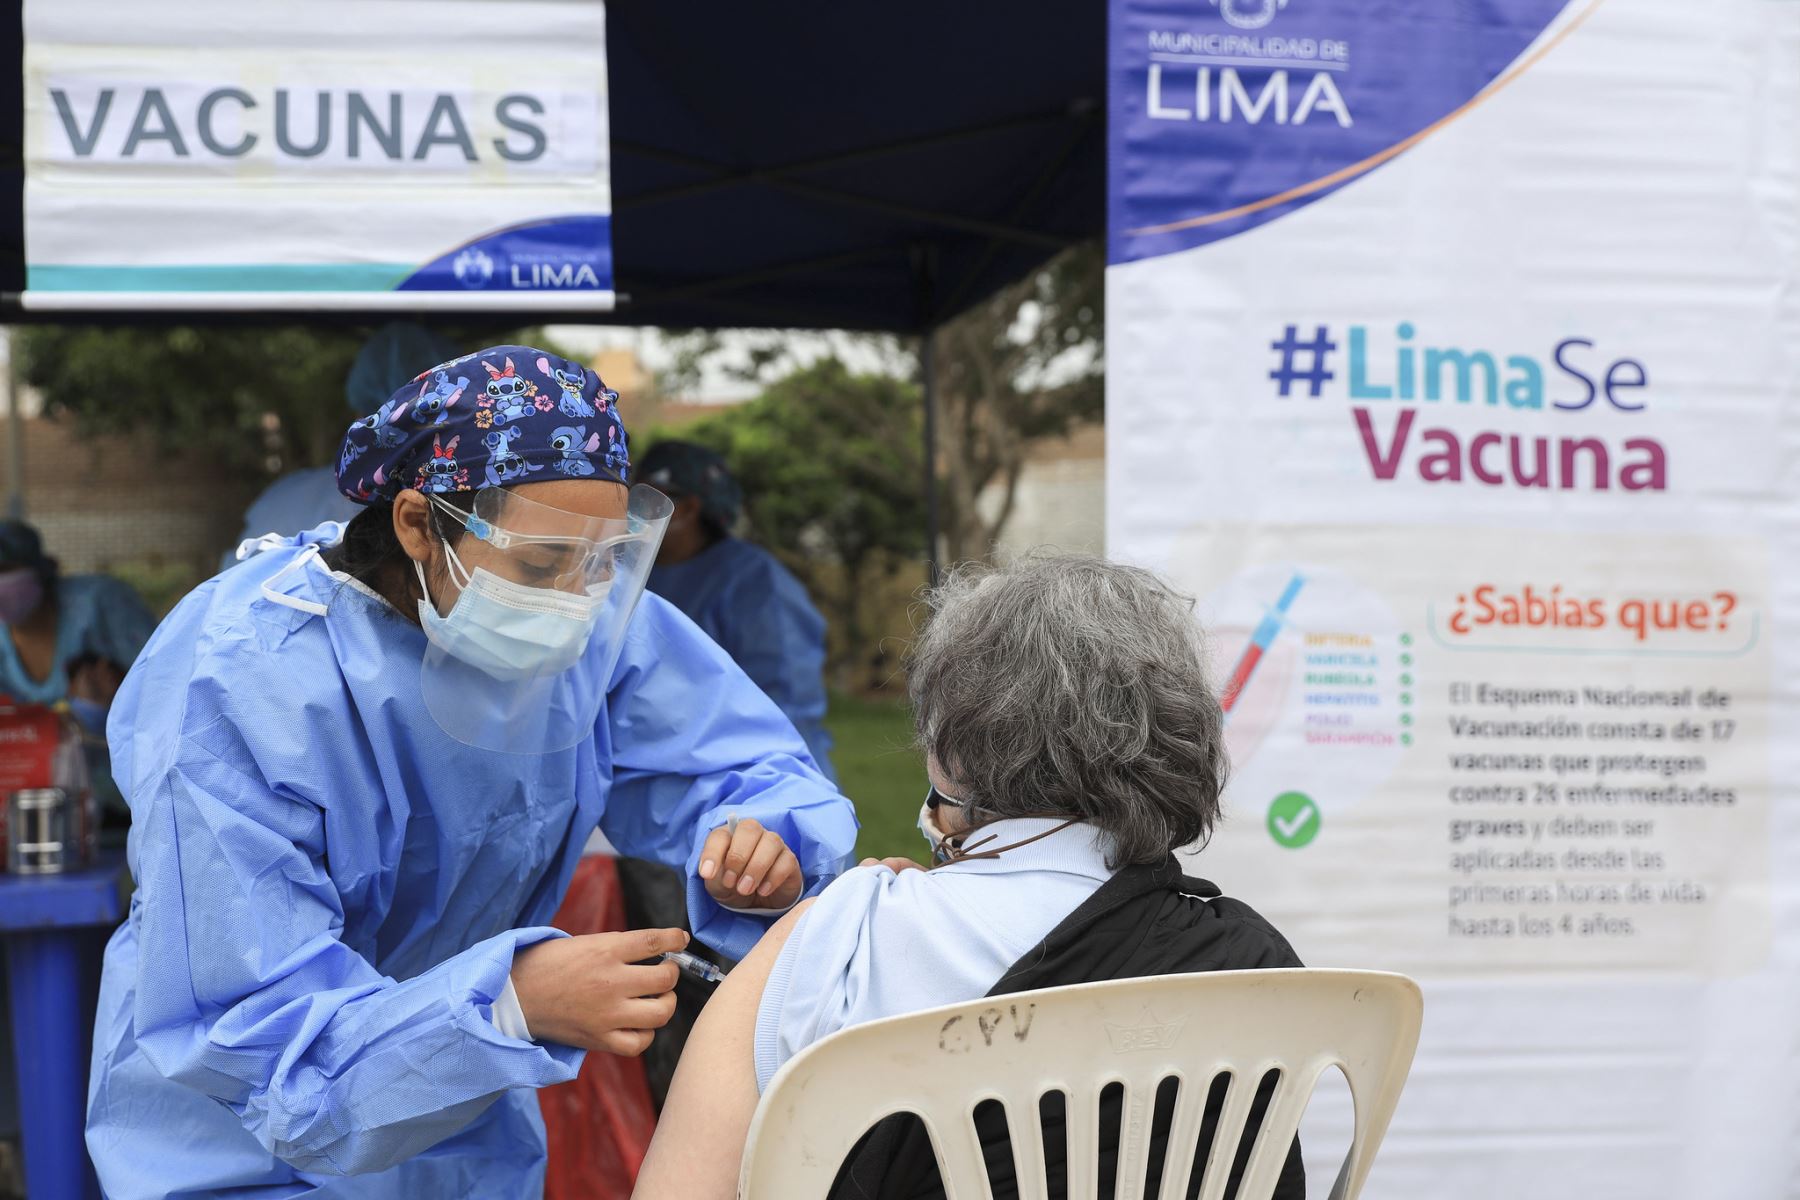 La comuna busca impulsar el cumplimiento del Esquema Nacional de Vacunación y sensibilizar a la población sobre la importancia de las vacunas. ANDINA/ Municipalidad de Lima